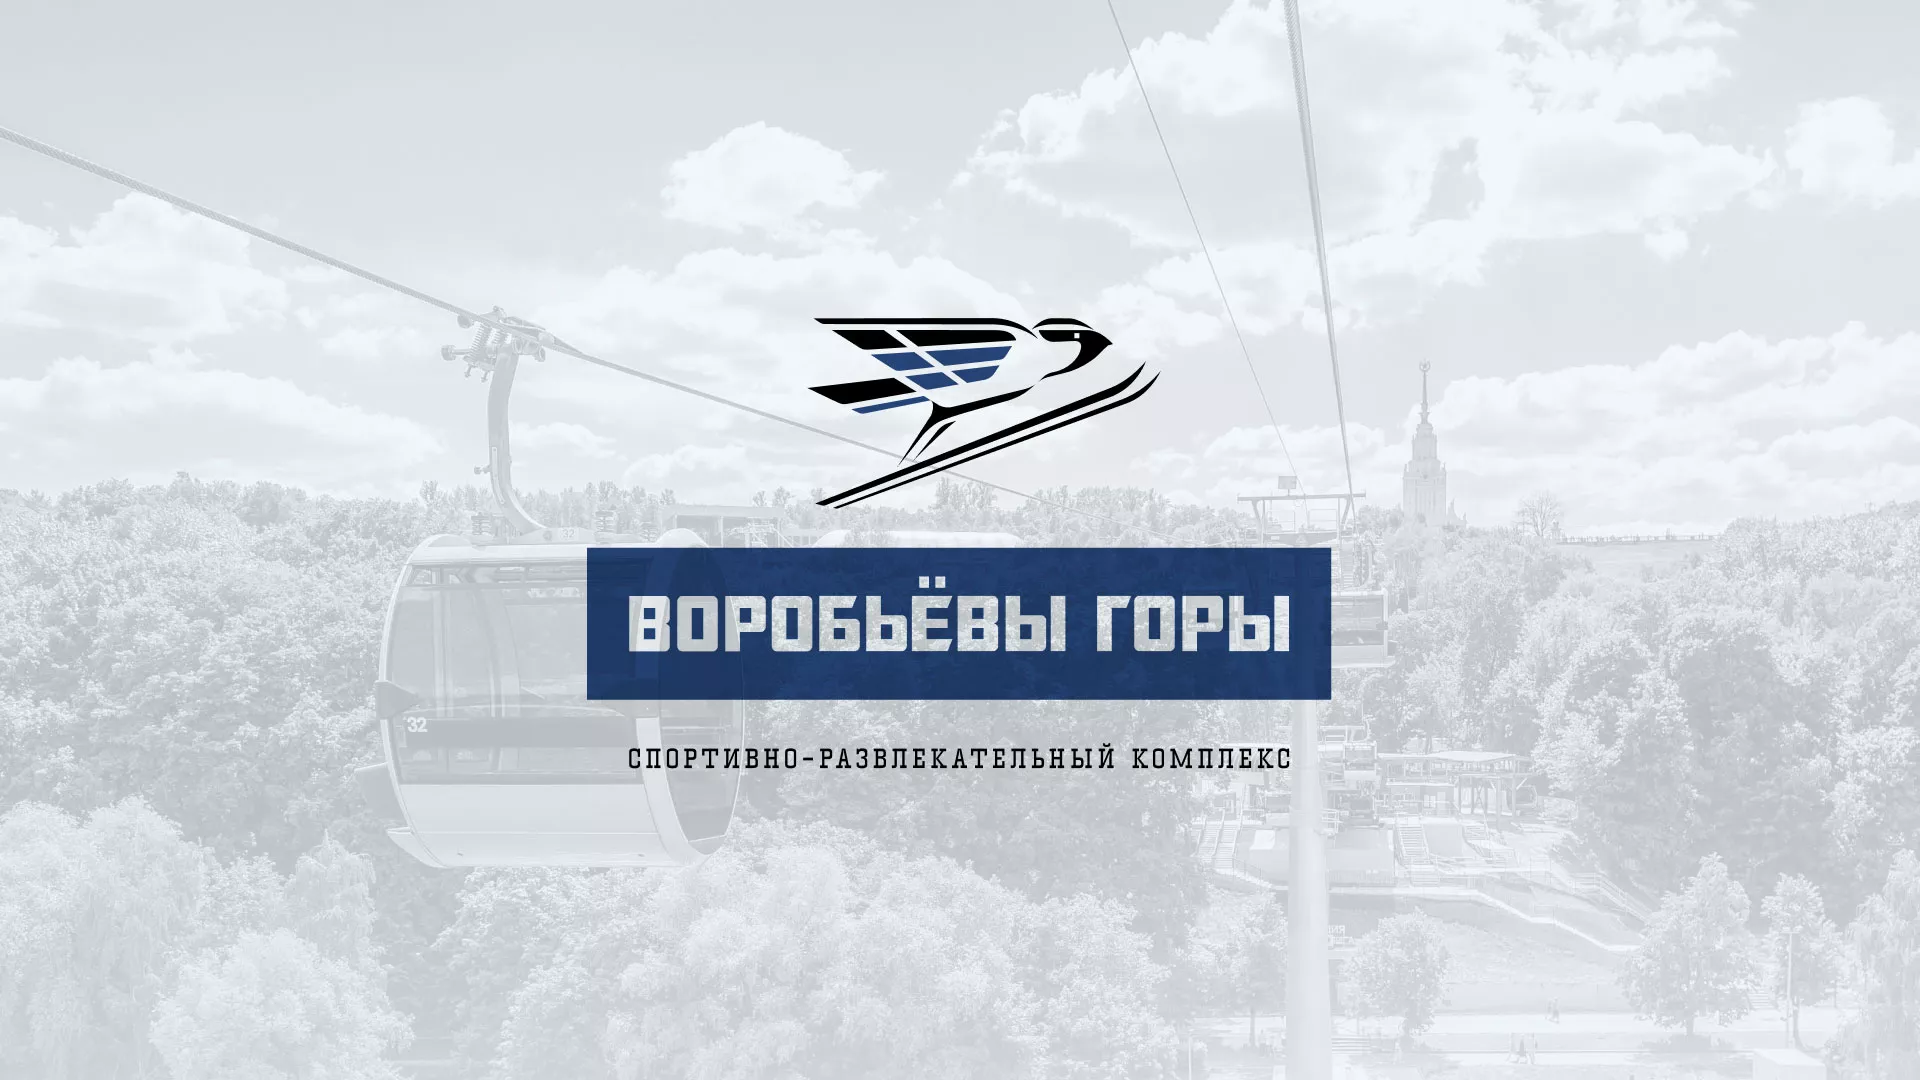 Разработка сайта в Павловском Посаде для спортивно-развлекательного комплекса «Воробьёвы горы»